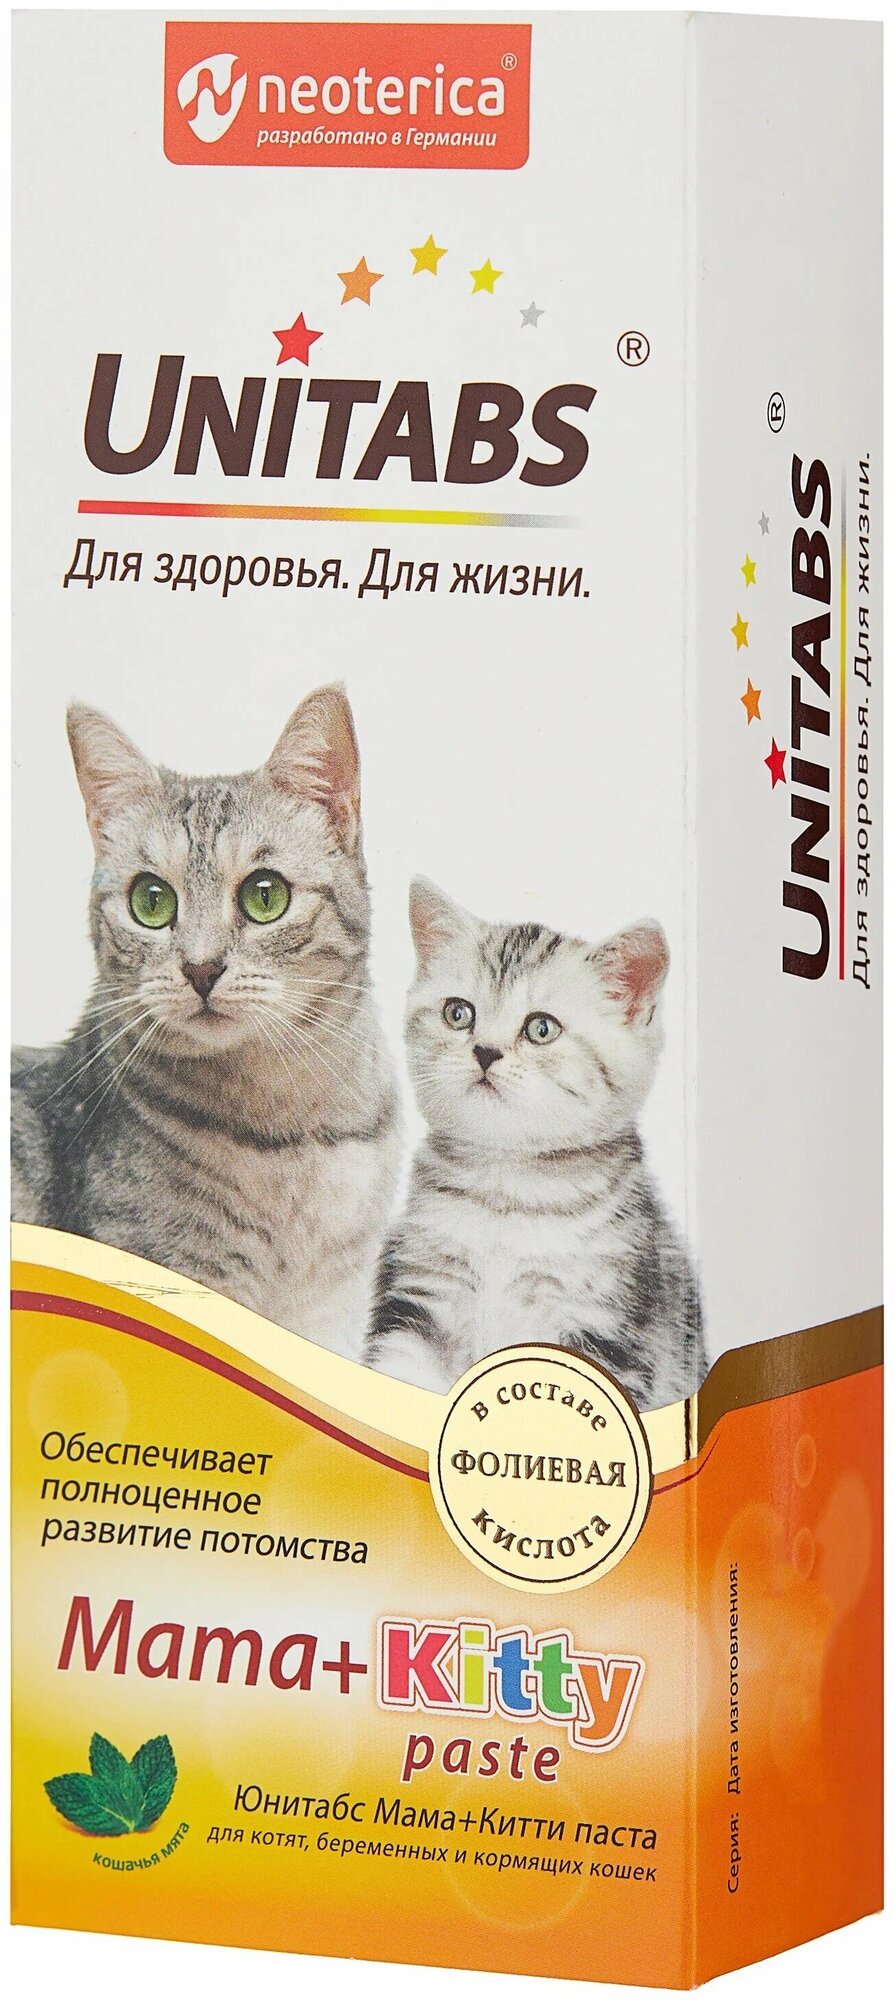 Экопром Unitabs Mama+Kitty paste Паста для котят, кормящих и беременных кошек 120мл